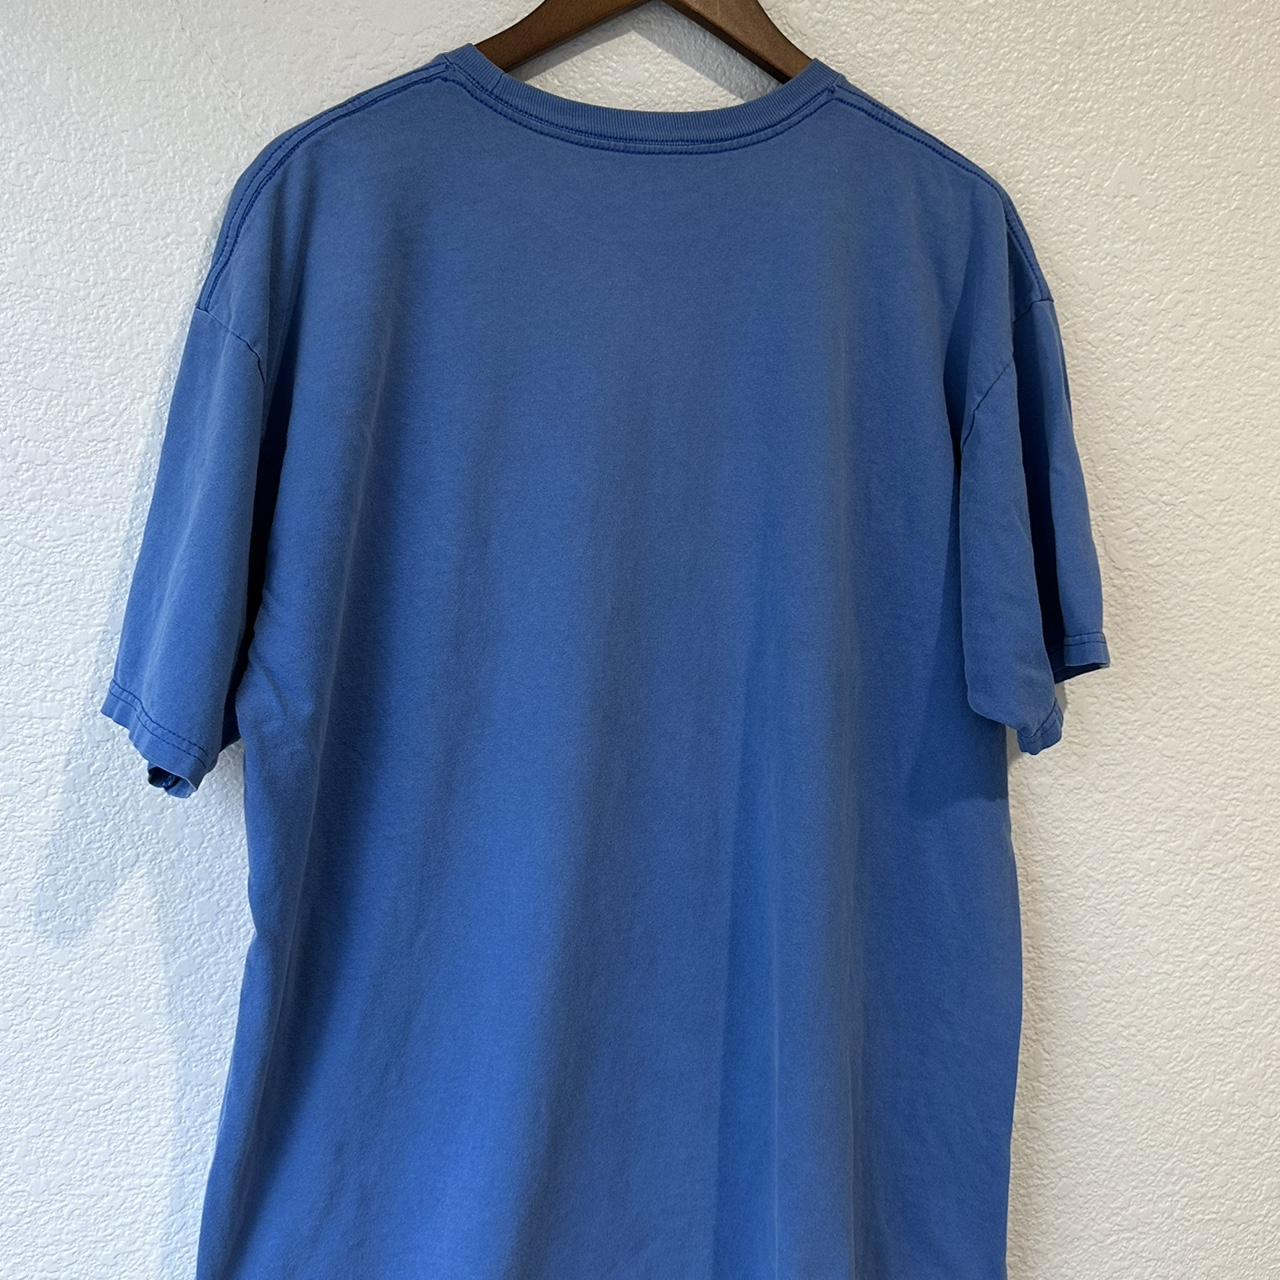 Etnies Shirt Adult XL Blue Graphic Skateboarding Tee... - Depop